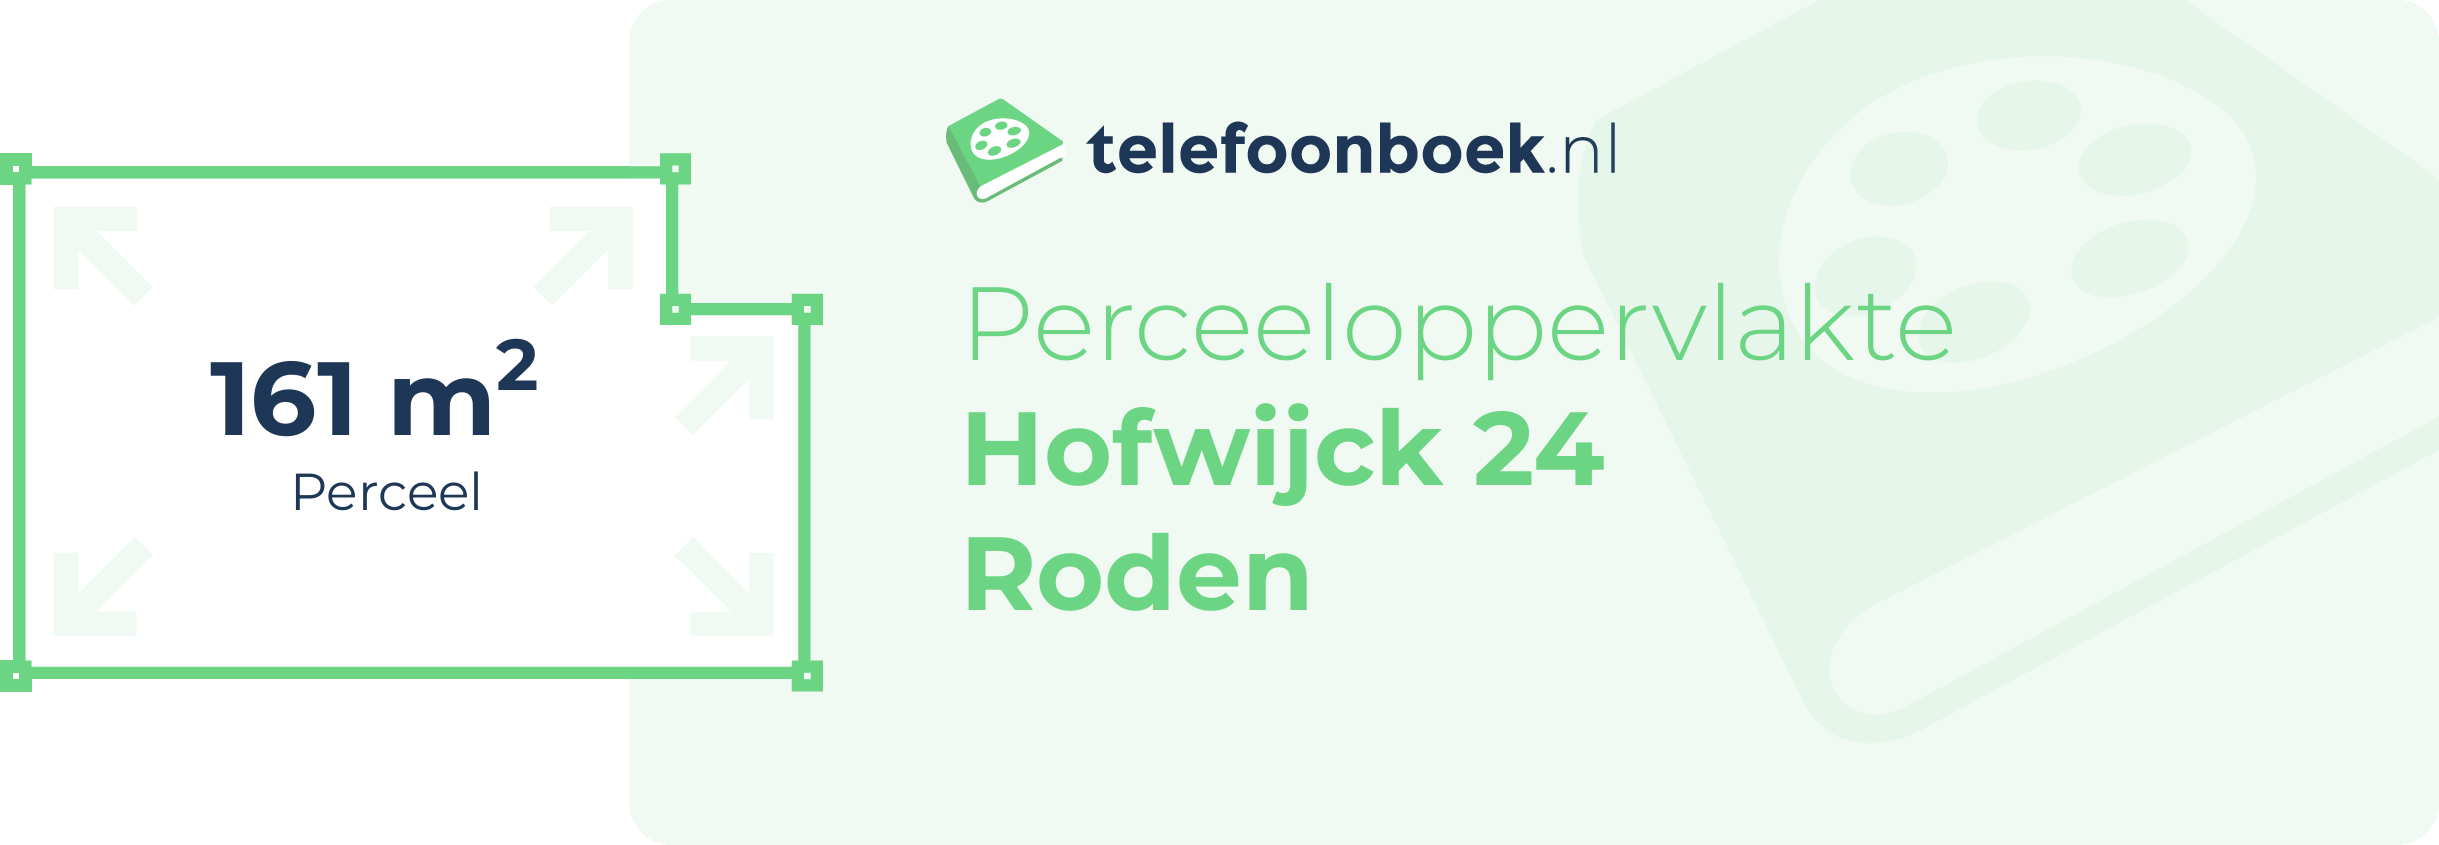 Perceeloppervlakte Hofwijck 24 Roden